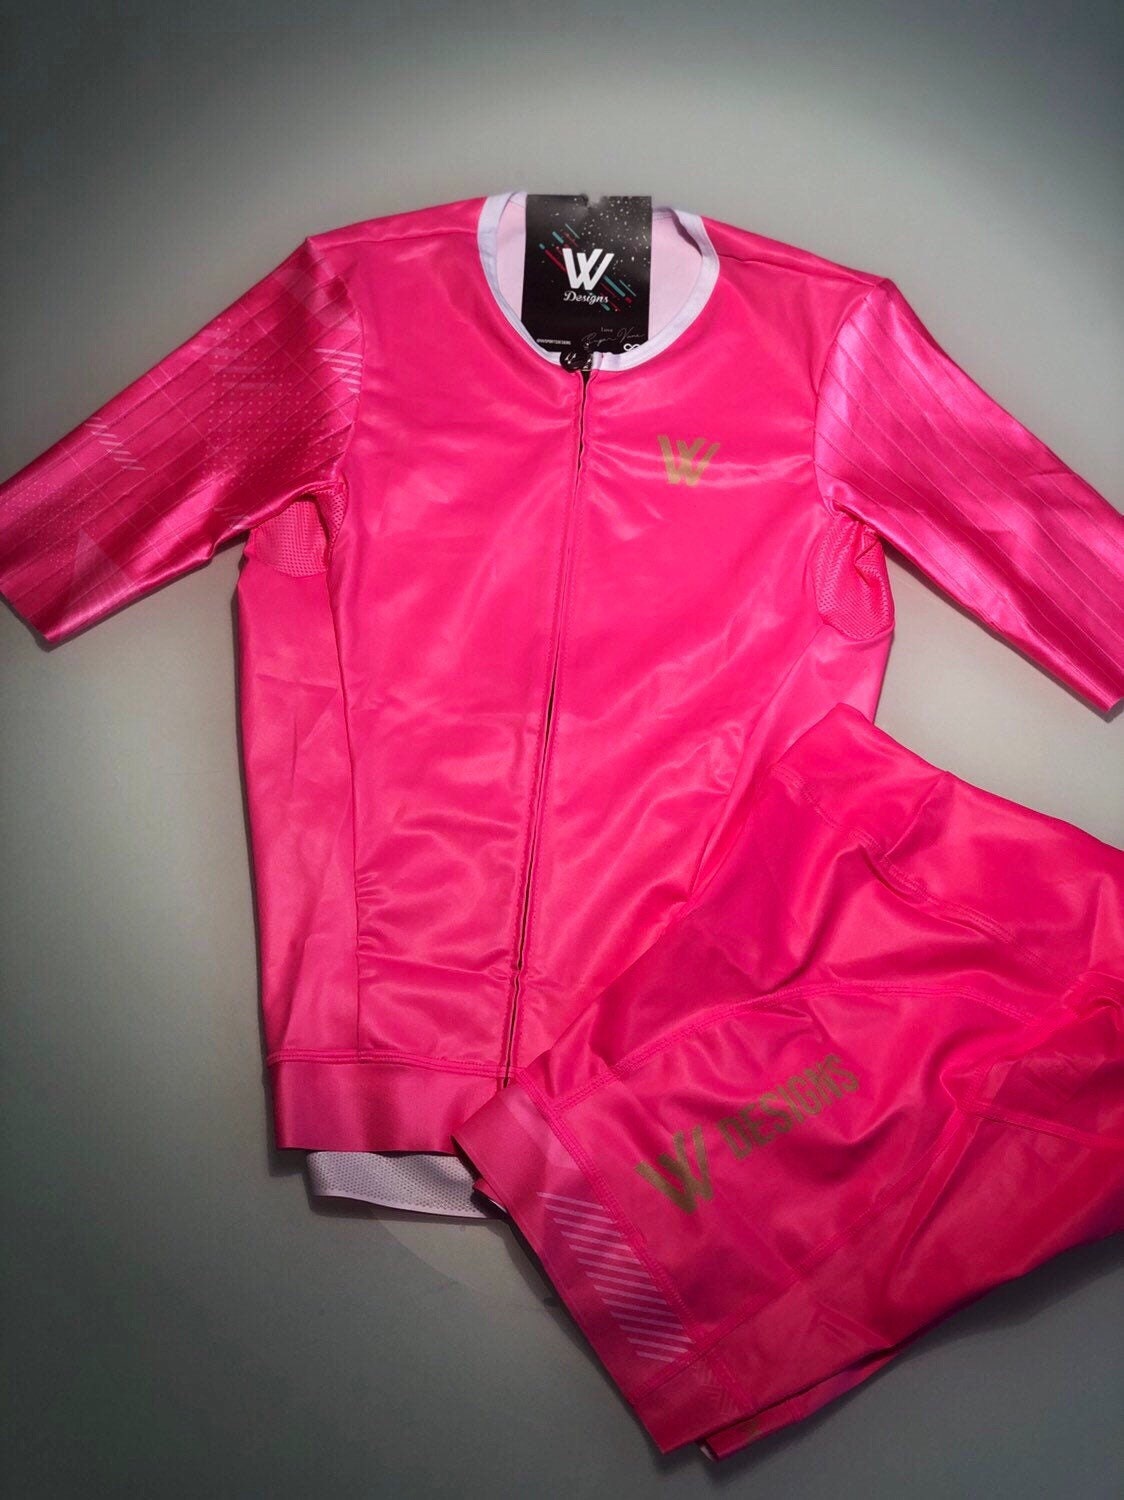 Download Pink Design, Trisuit Mockup Set, Sports Apparel Template ...